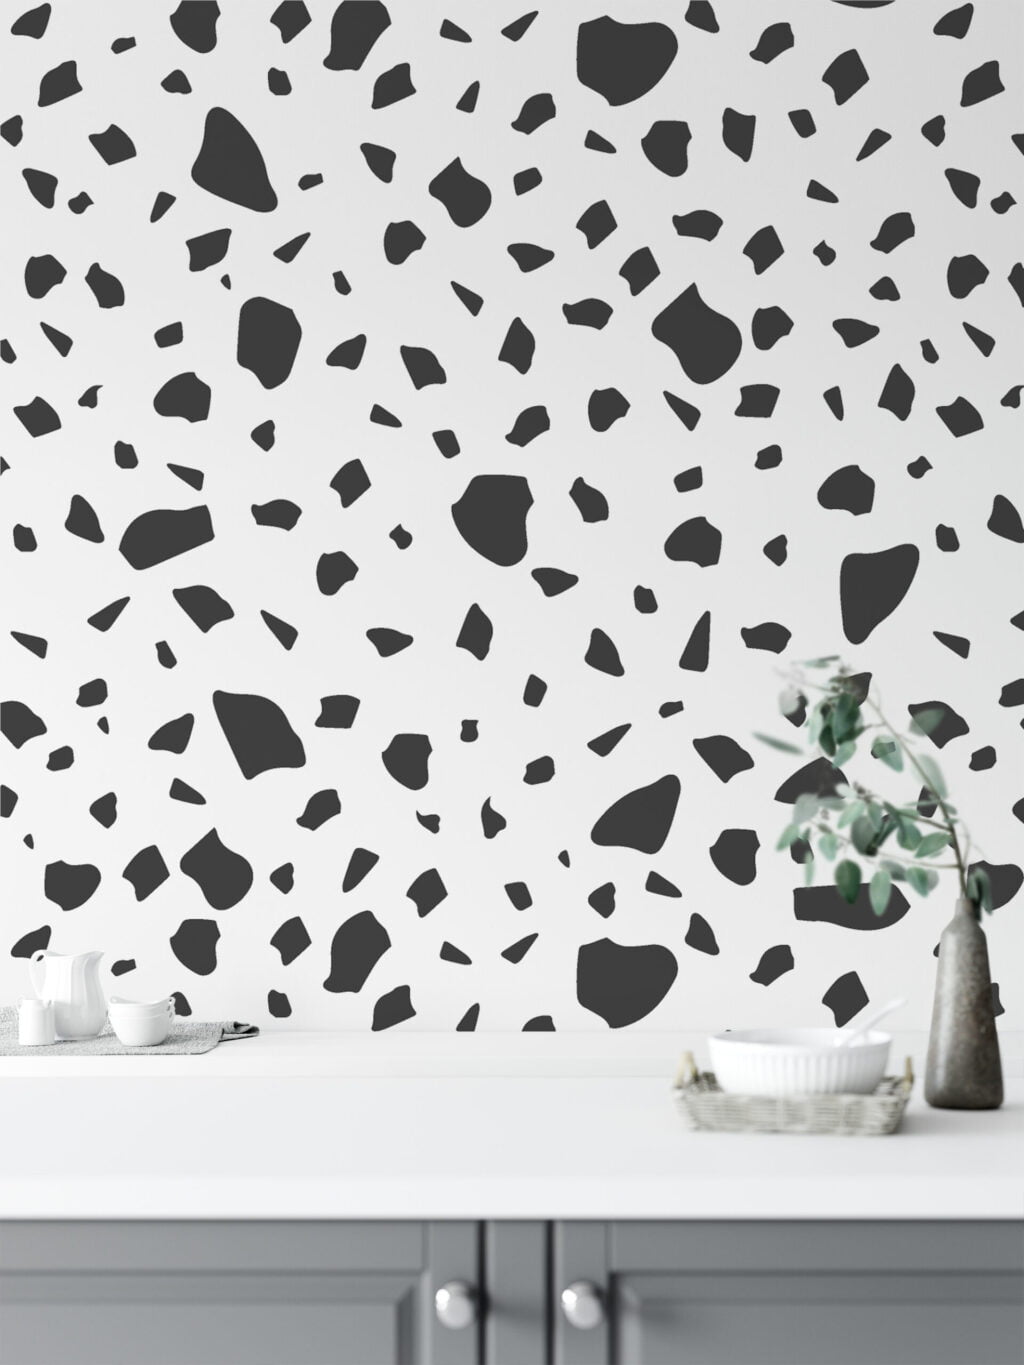 Koyu Gri Blok Desenli Duvar Kağıdı, Minimalist Terrazzo Siyah & Beyaz 3D Duvar Kağıdı Geometrik Duvar Kağıtları 5